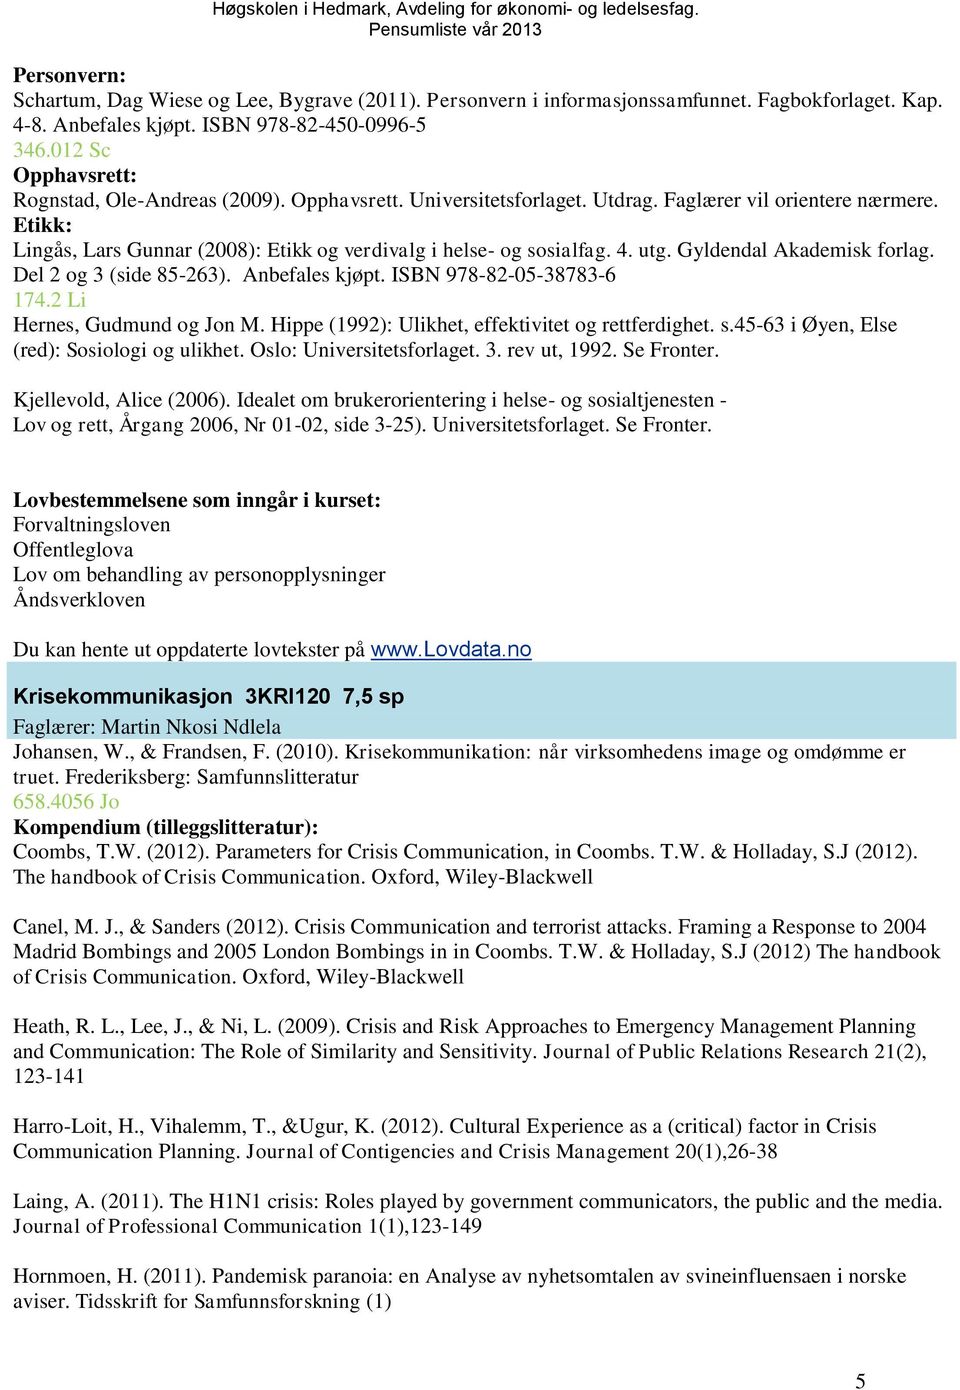 Etikk: Lingås, Lars Gunnar (2008): Etikk og verdivalg i helse- og sosialfag. 4. utg. Gyldendal Akademisk forlag. Del 2 og 3 (side 85-263). Anbefales kjøpt. ISBN 978-82-05-38783-6 174.